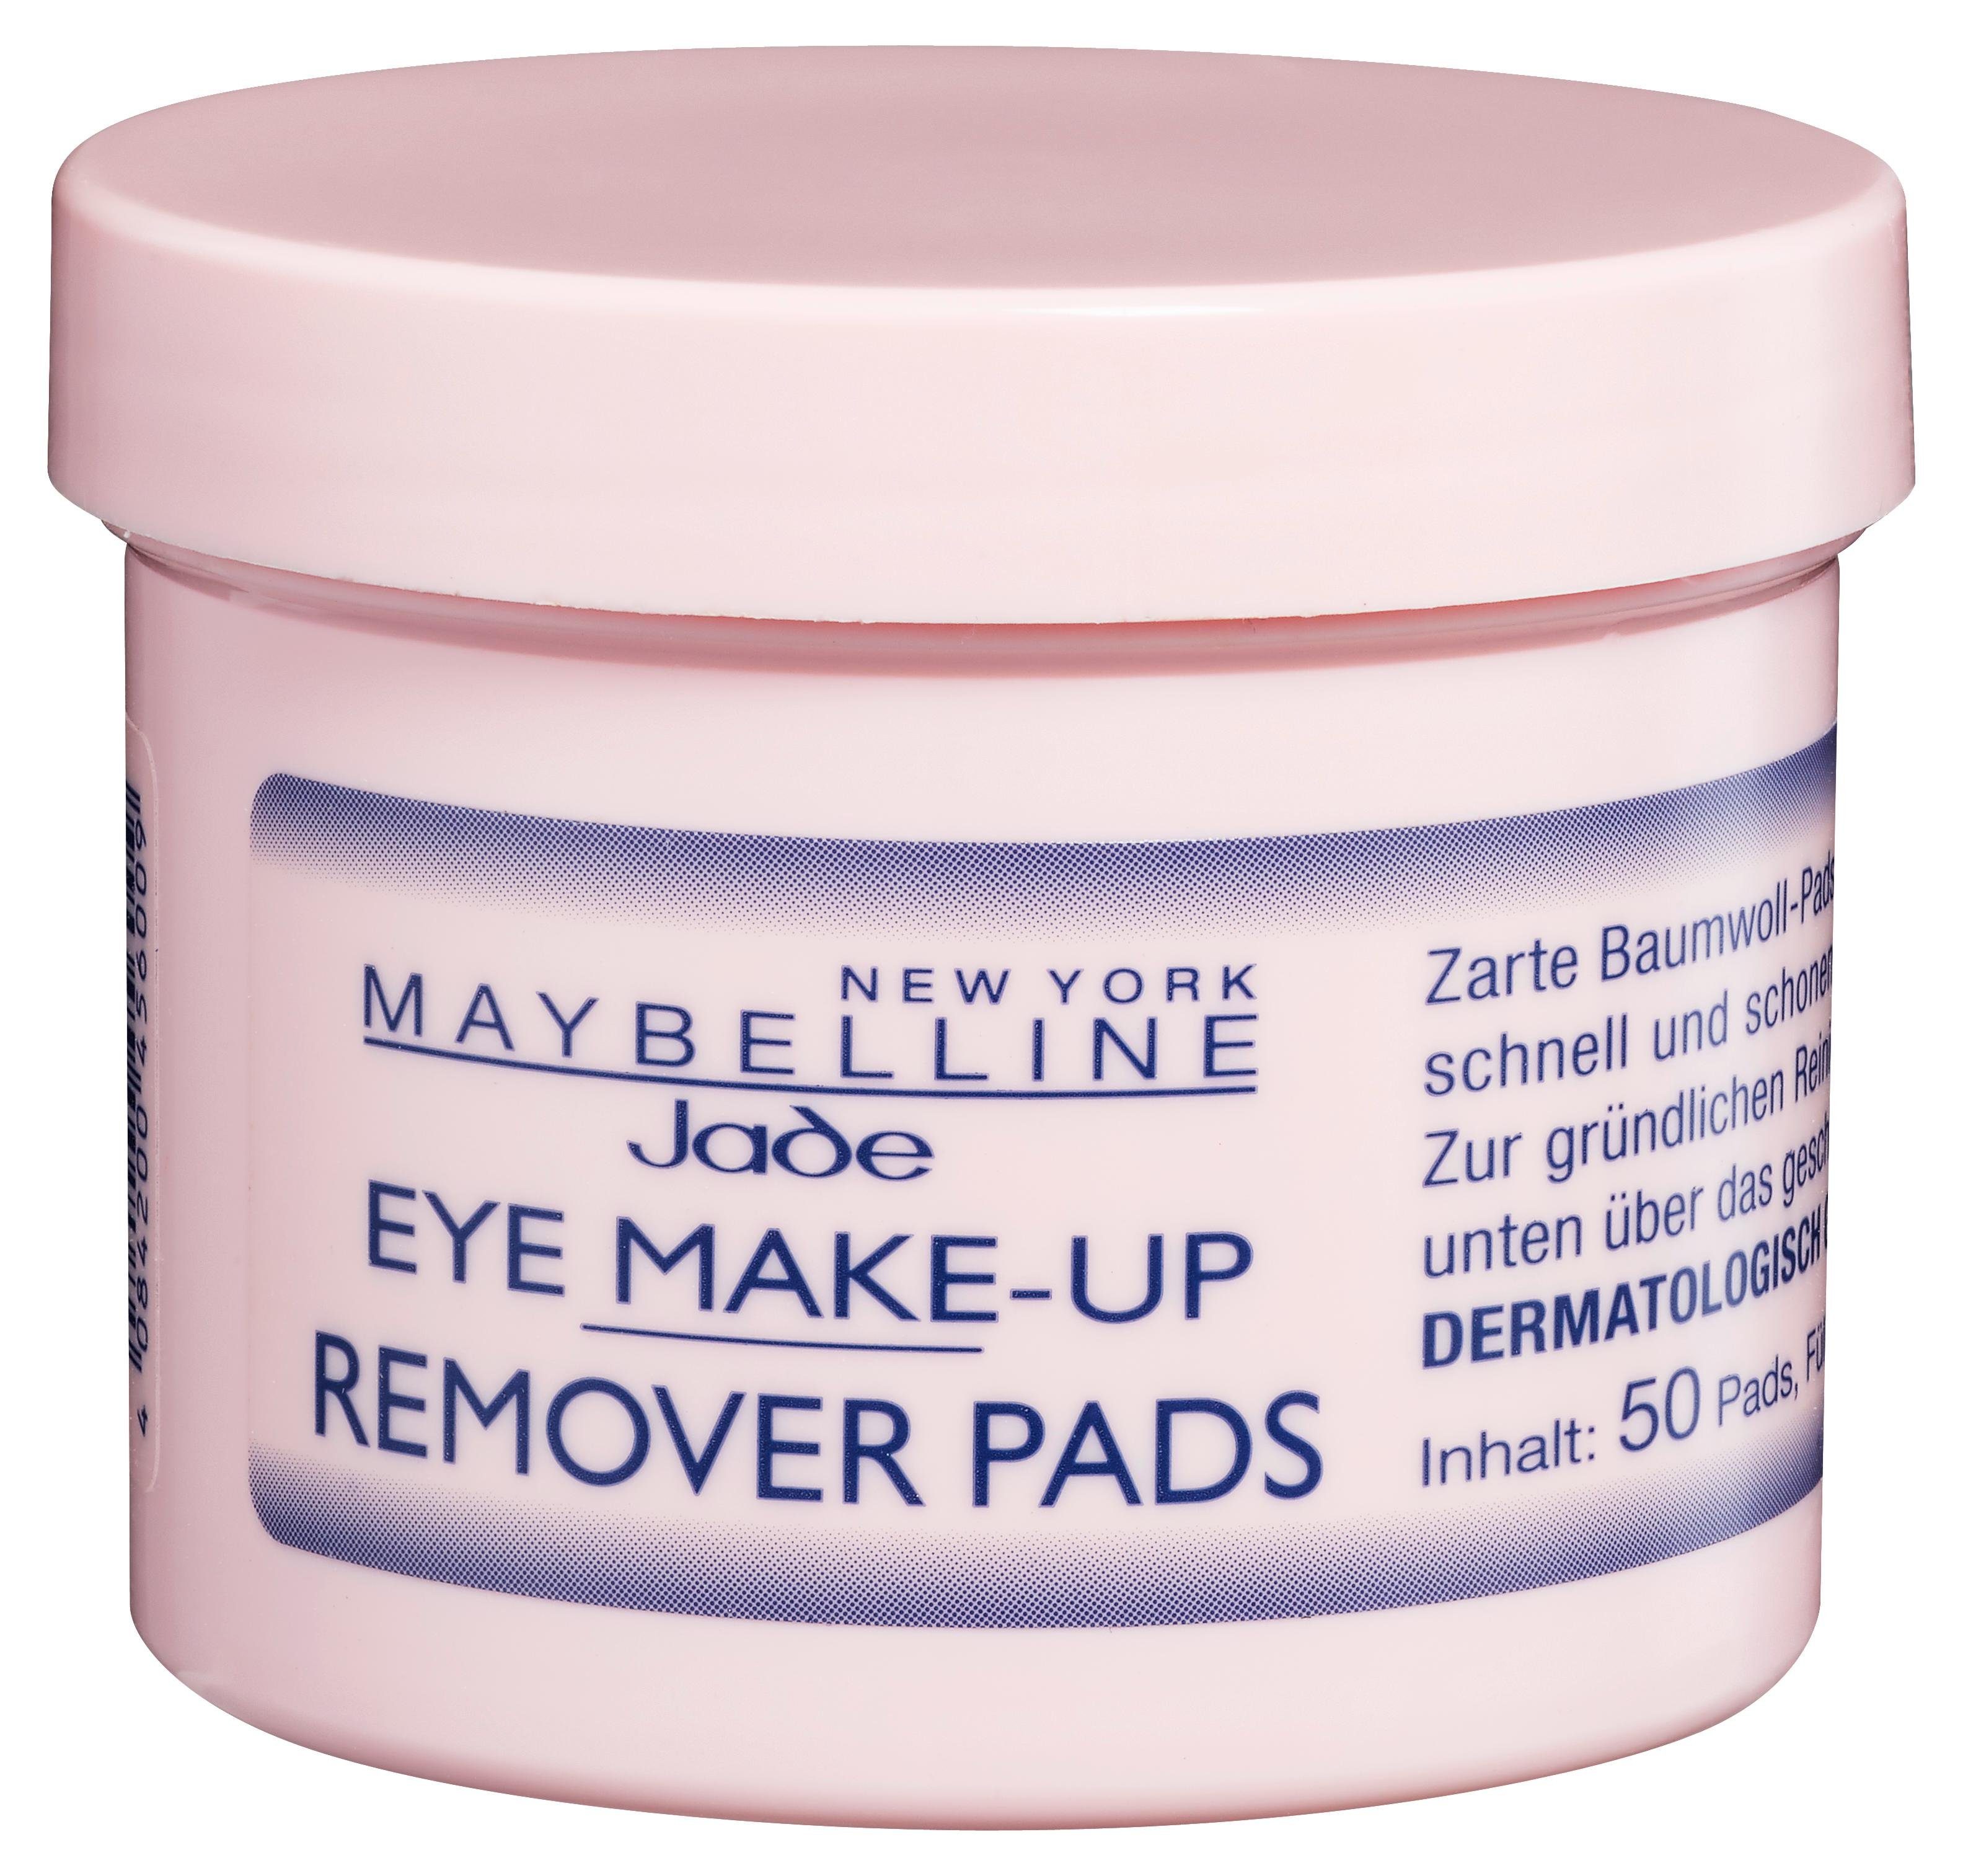 NEW Remover Pads Augen-Make-up-Entferner Eye Make-Up MAYBELLINE YORK